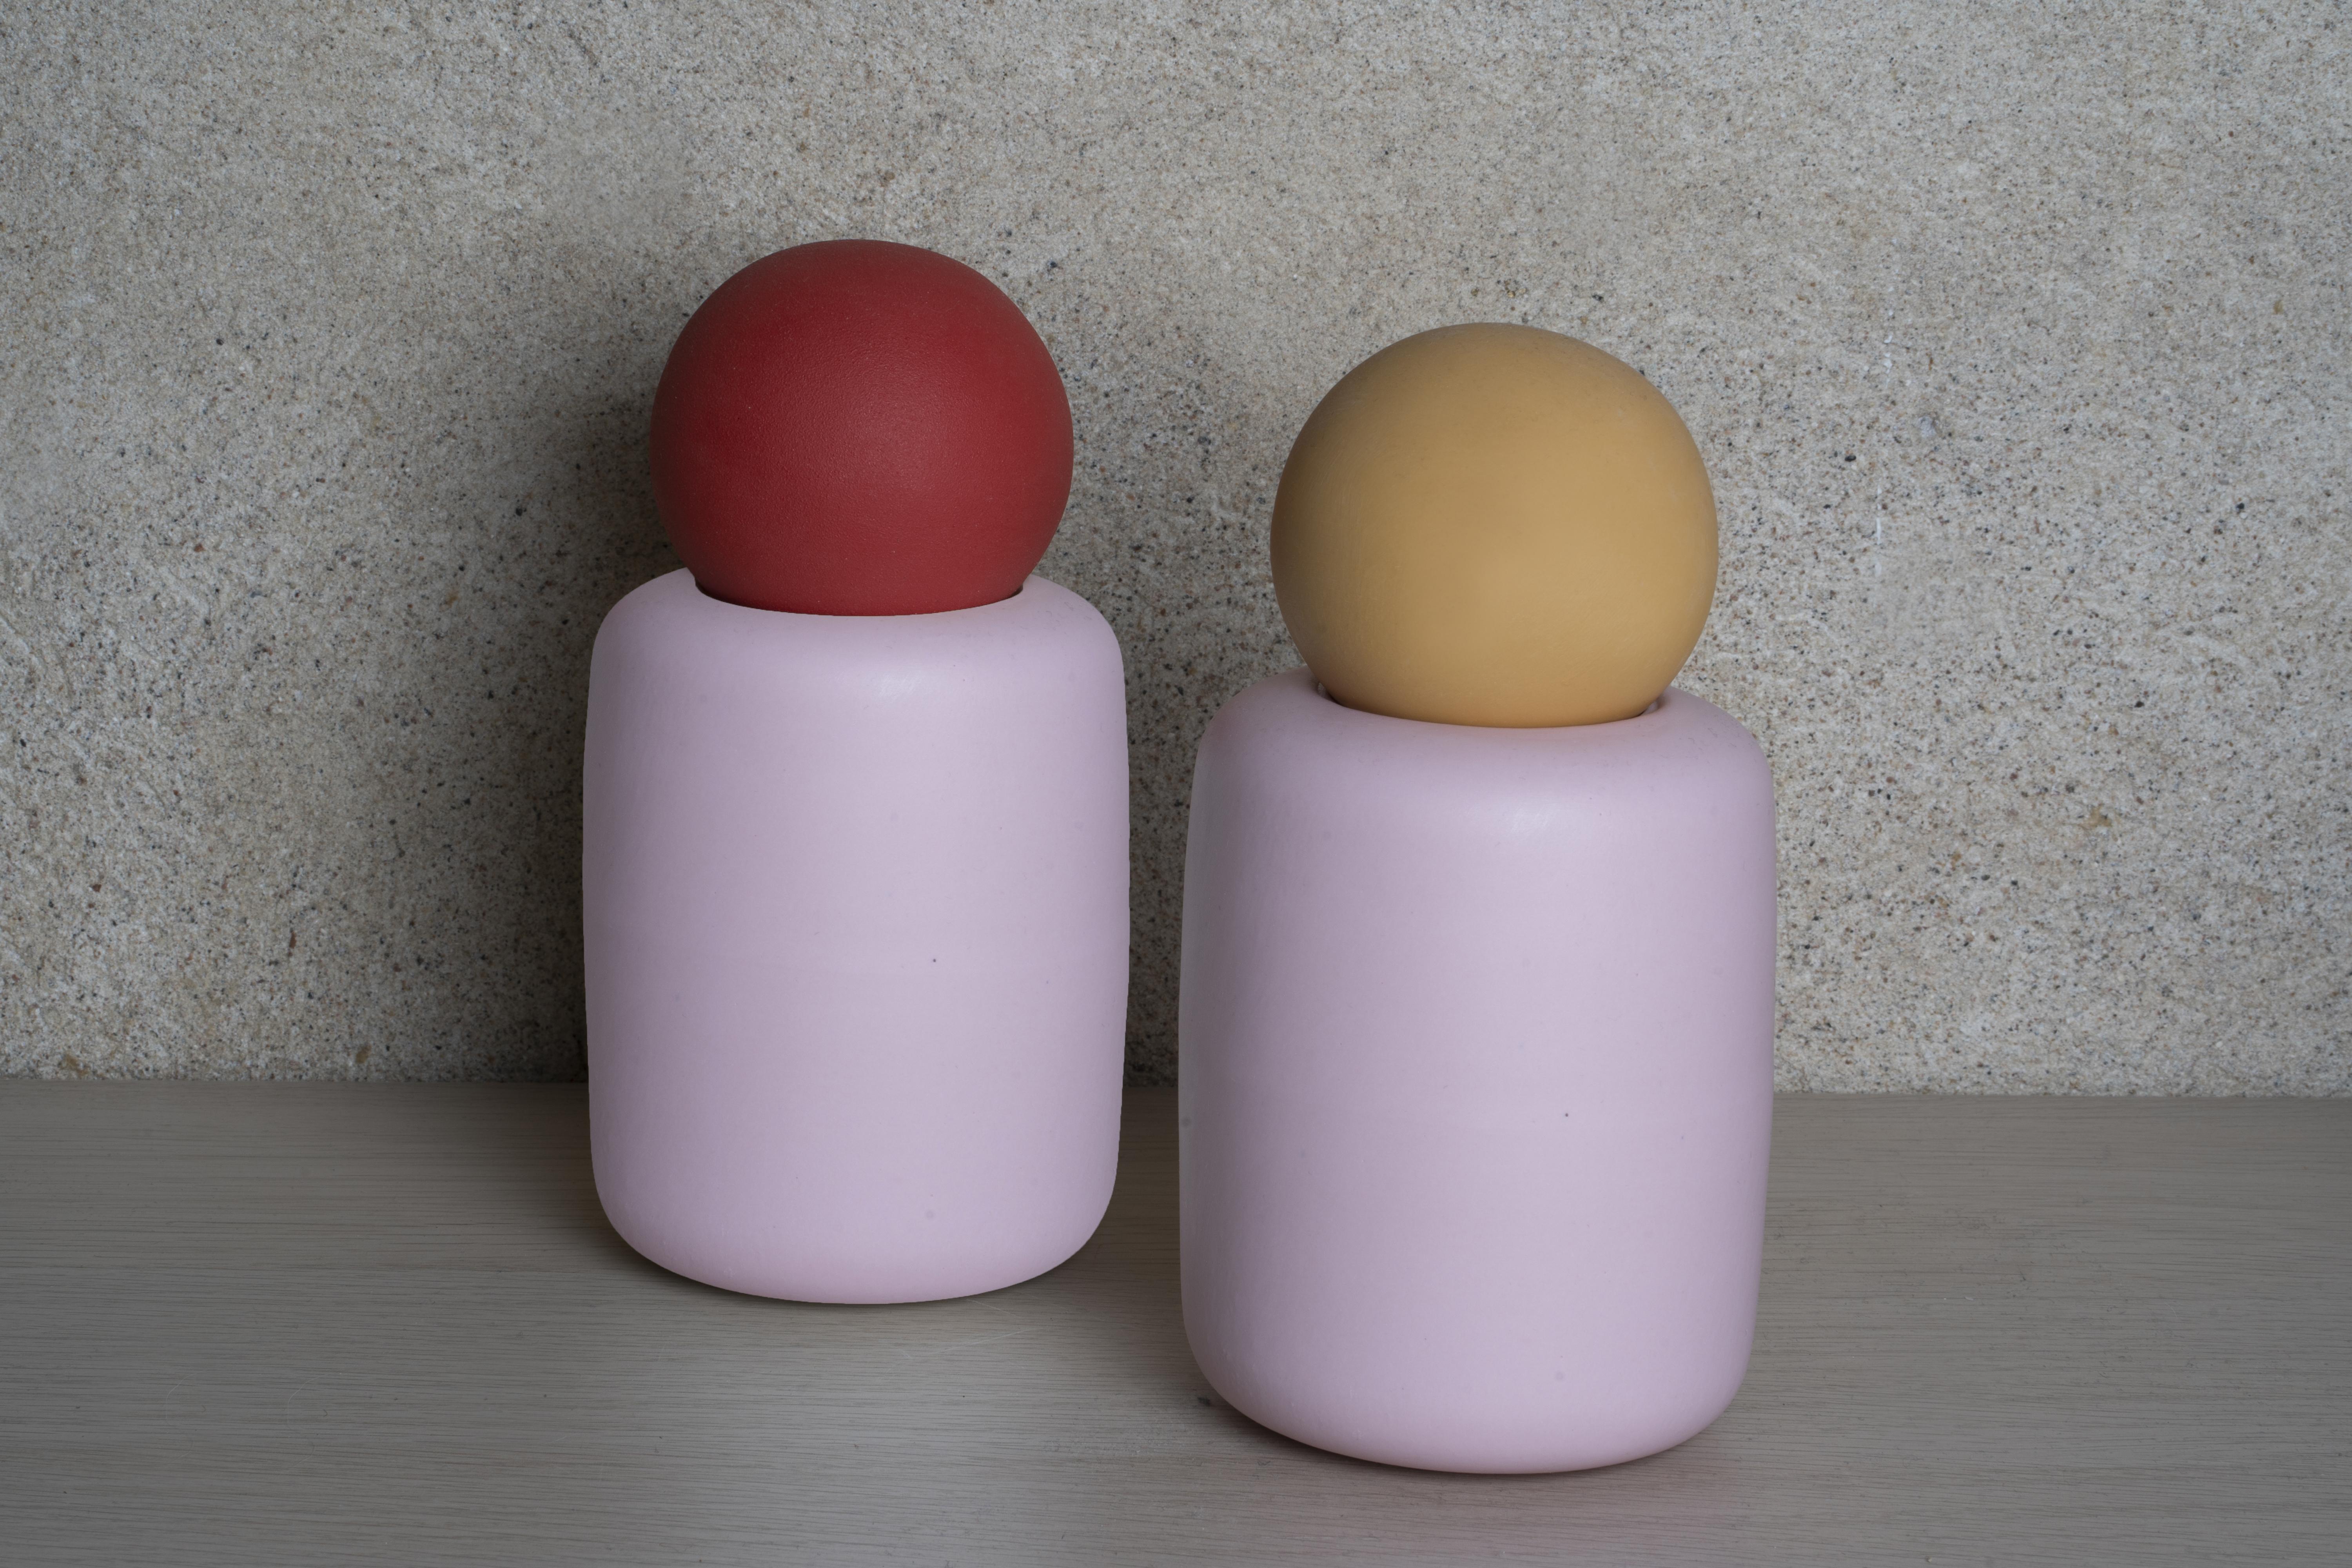 O-Jar est un récipient sculptural en porcelaine fabriqué à la main. Un corps en porcelaine mate de couleur rose tendre est complété par une casquette de balle surdimensionnée. L'intérieur de la cuve est émaillé et convient au stockage des